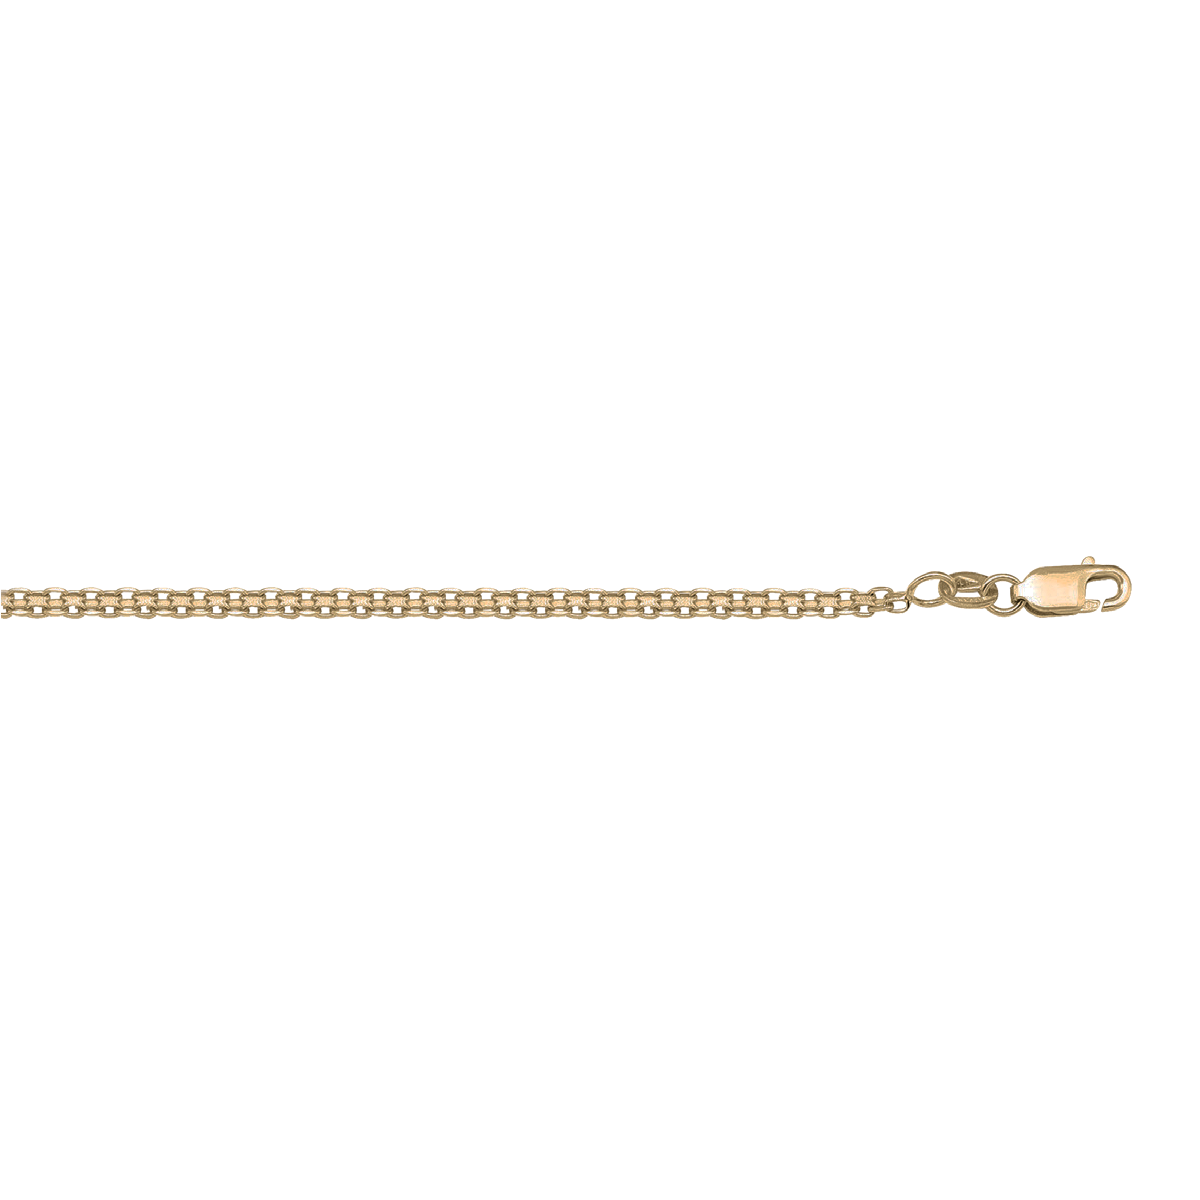 CBIS01, Gold Bracelet, Bismark, Yellow Gold